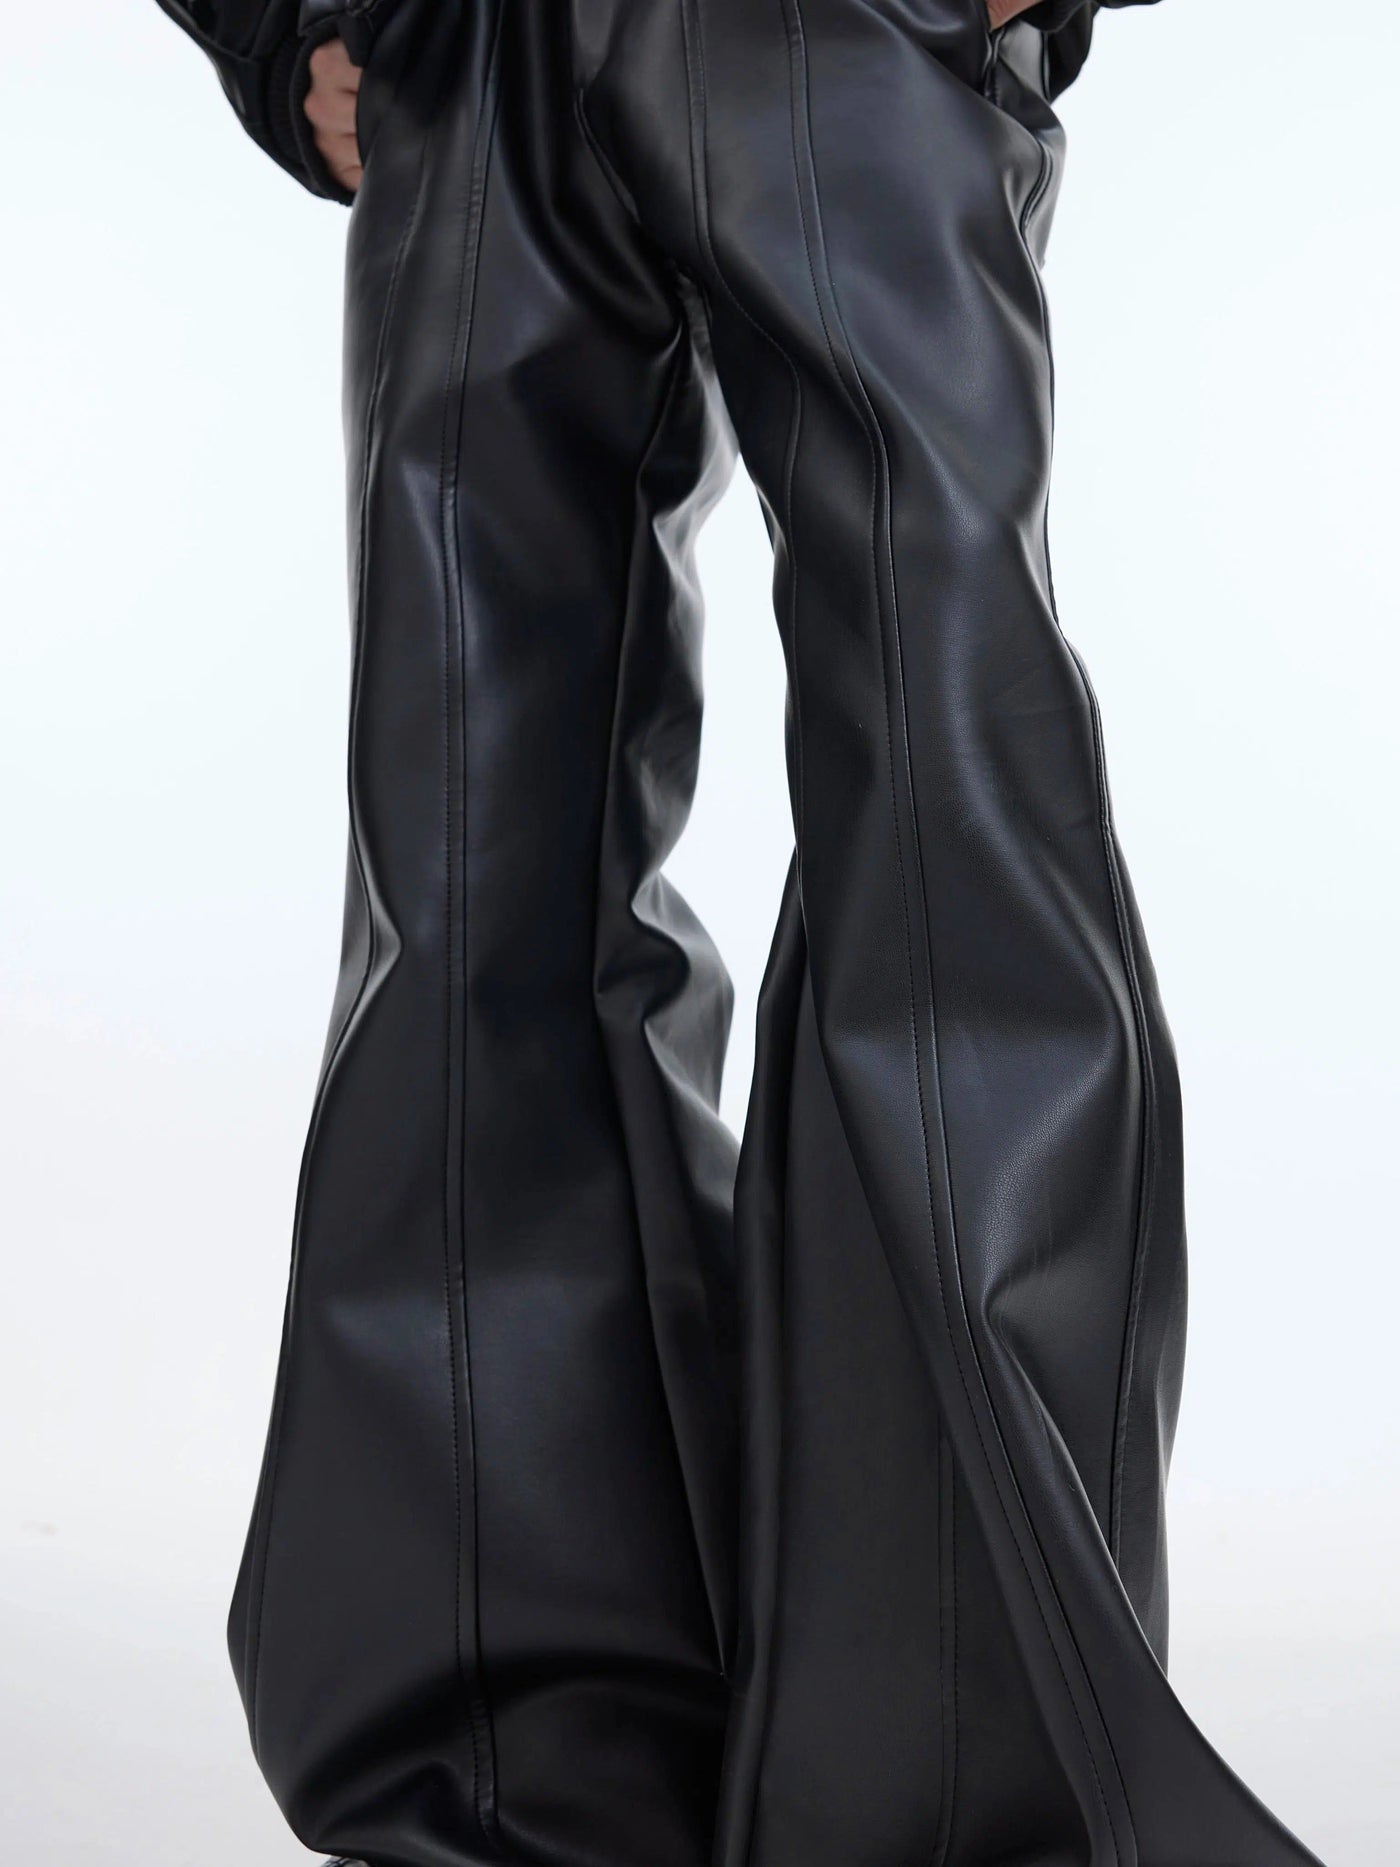 Wide Leg Cut Leather Pants Korean Street Fashion Pants By Argue Culture Shop Online at OH Vault